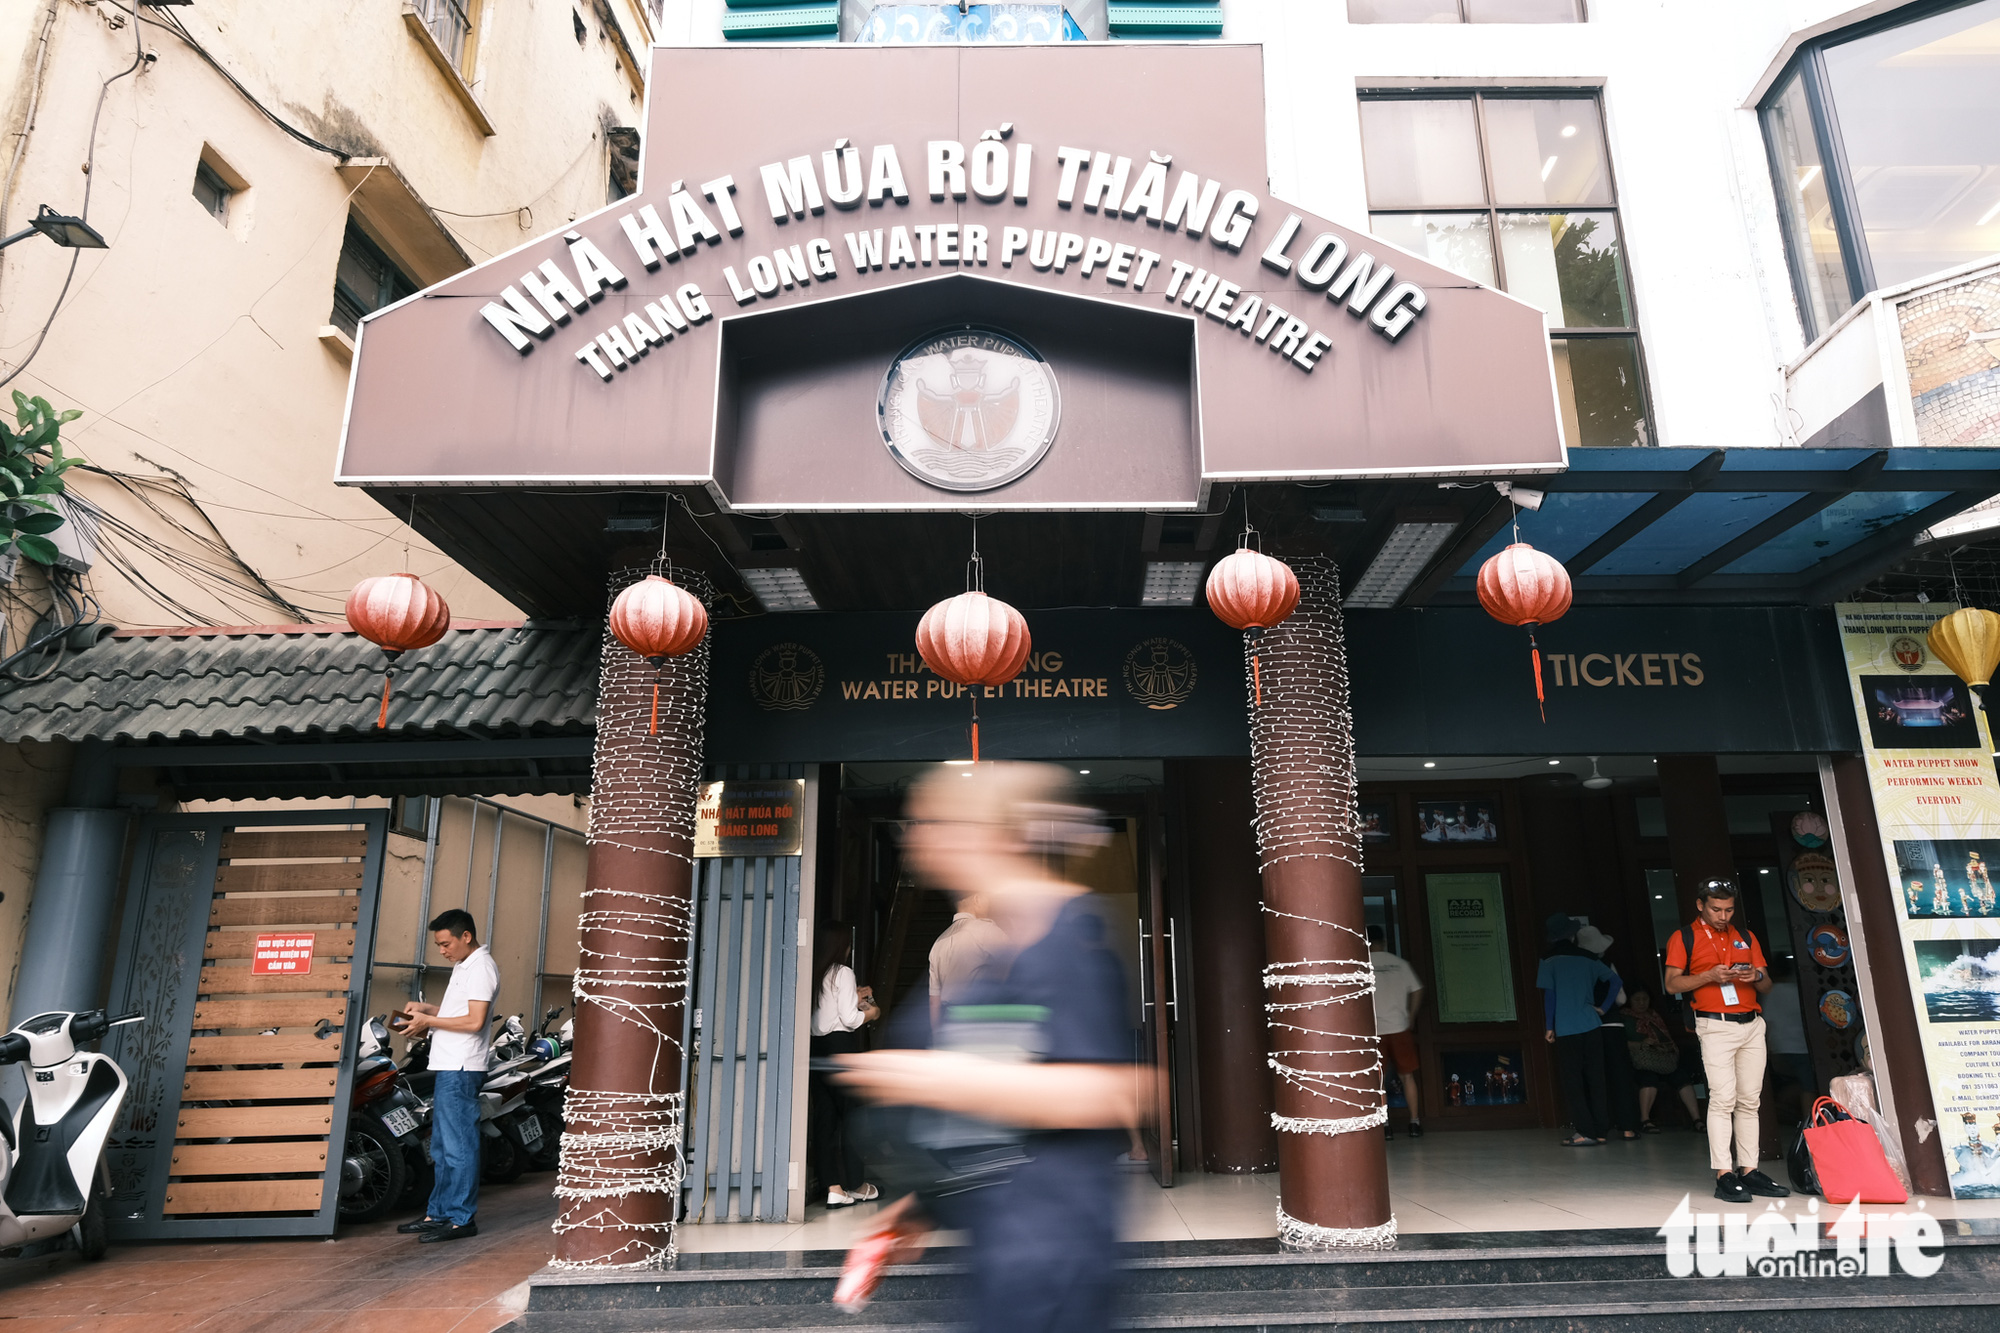 Múa rối nước là đặc sản văn hóa ở Hà Nội với khách nước ngoài - Ảnh 9.